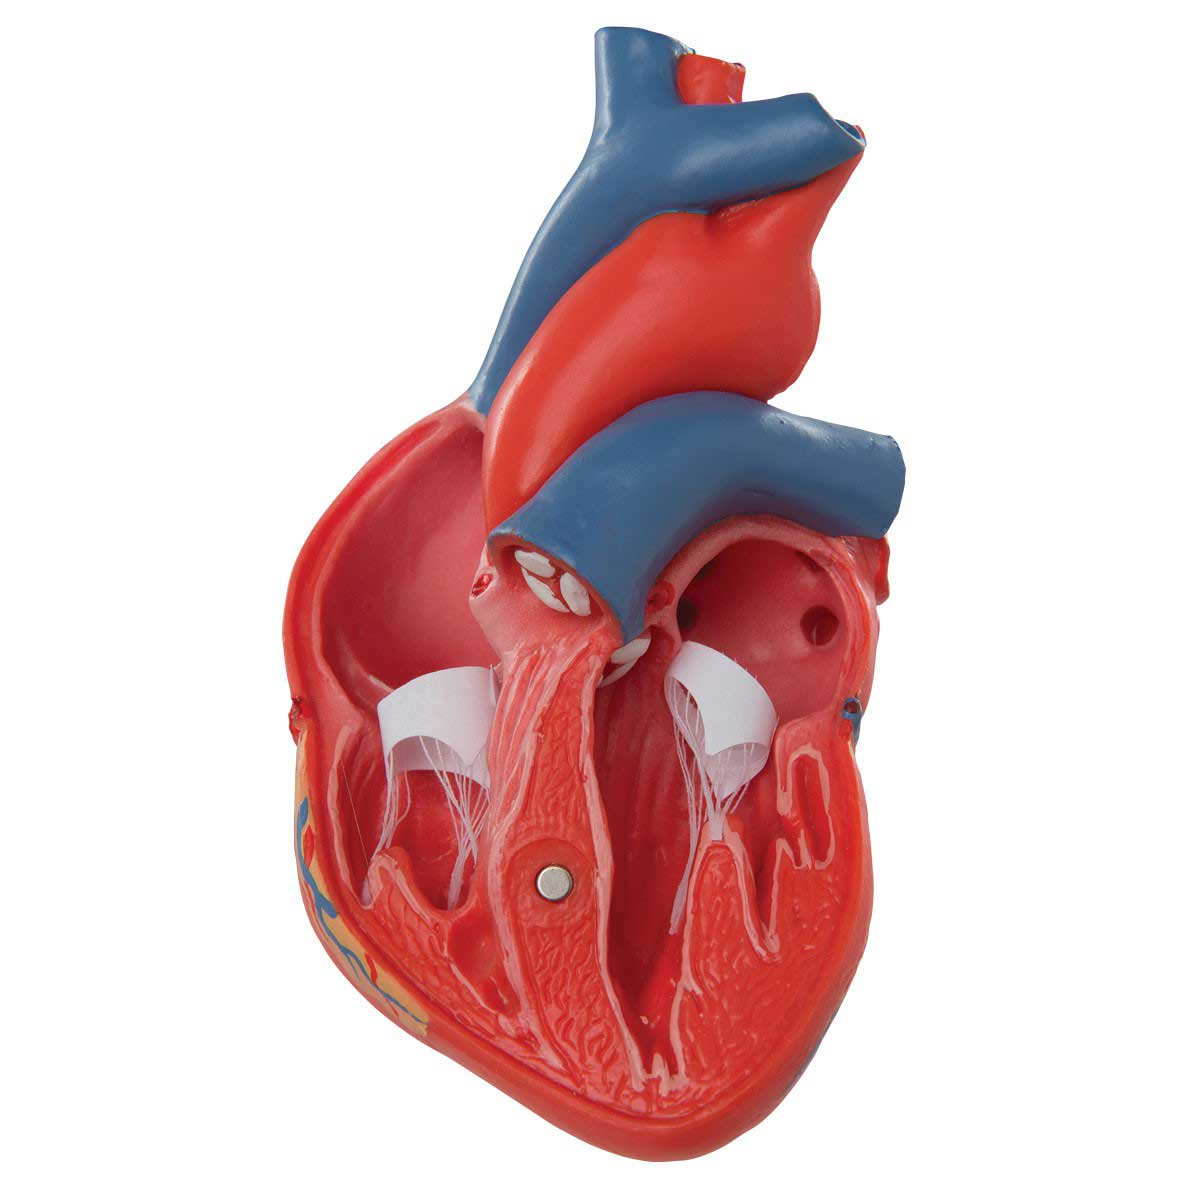 Изменения миокарда левого желудочка сердца. Миокард желудочка сердца. Миокард сердца анатомия. Сердечная мышца миокард. Левый желудочек сердца фото.